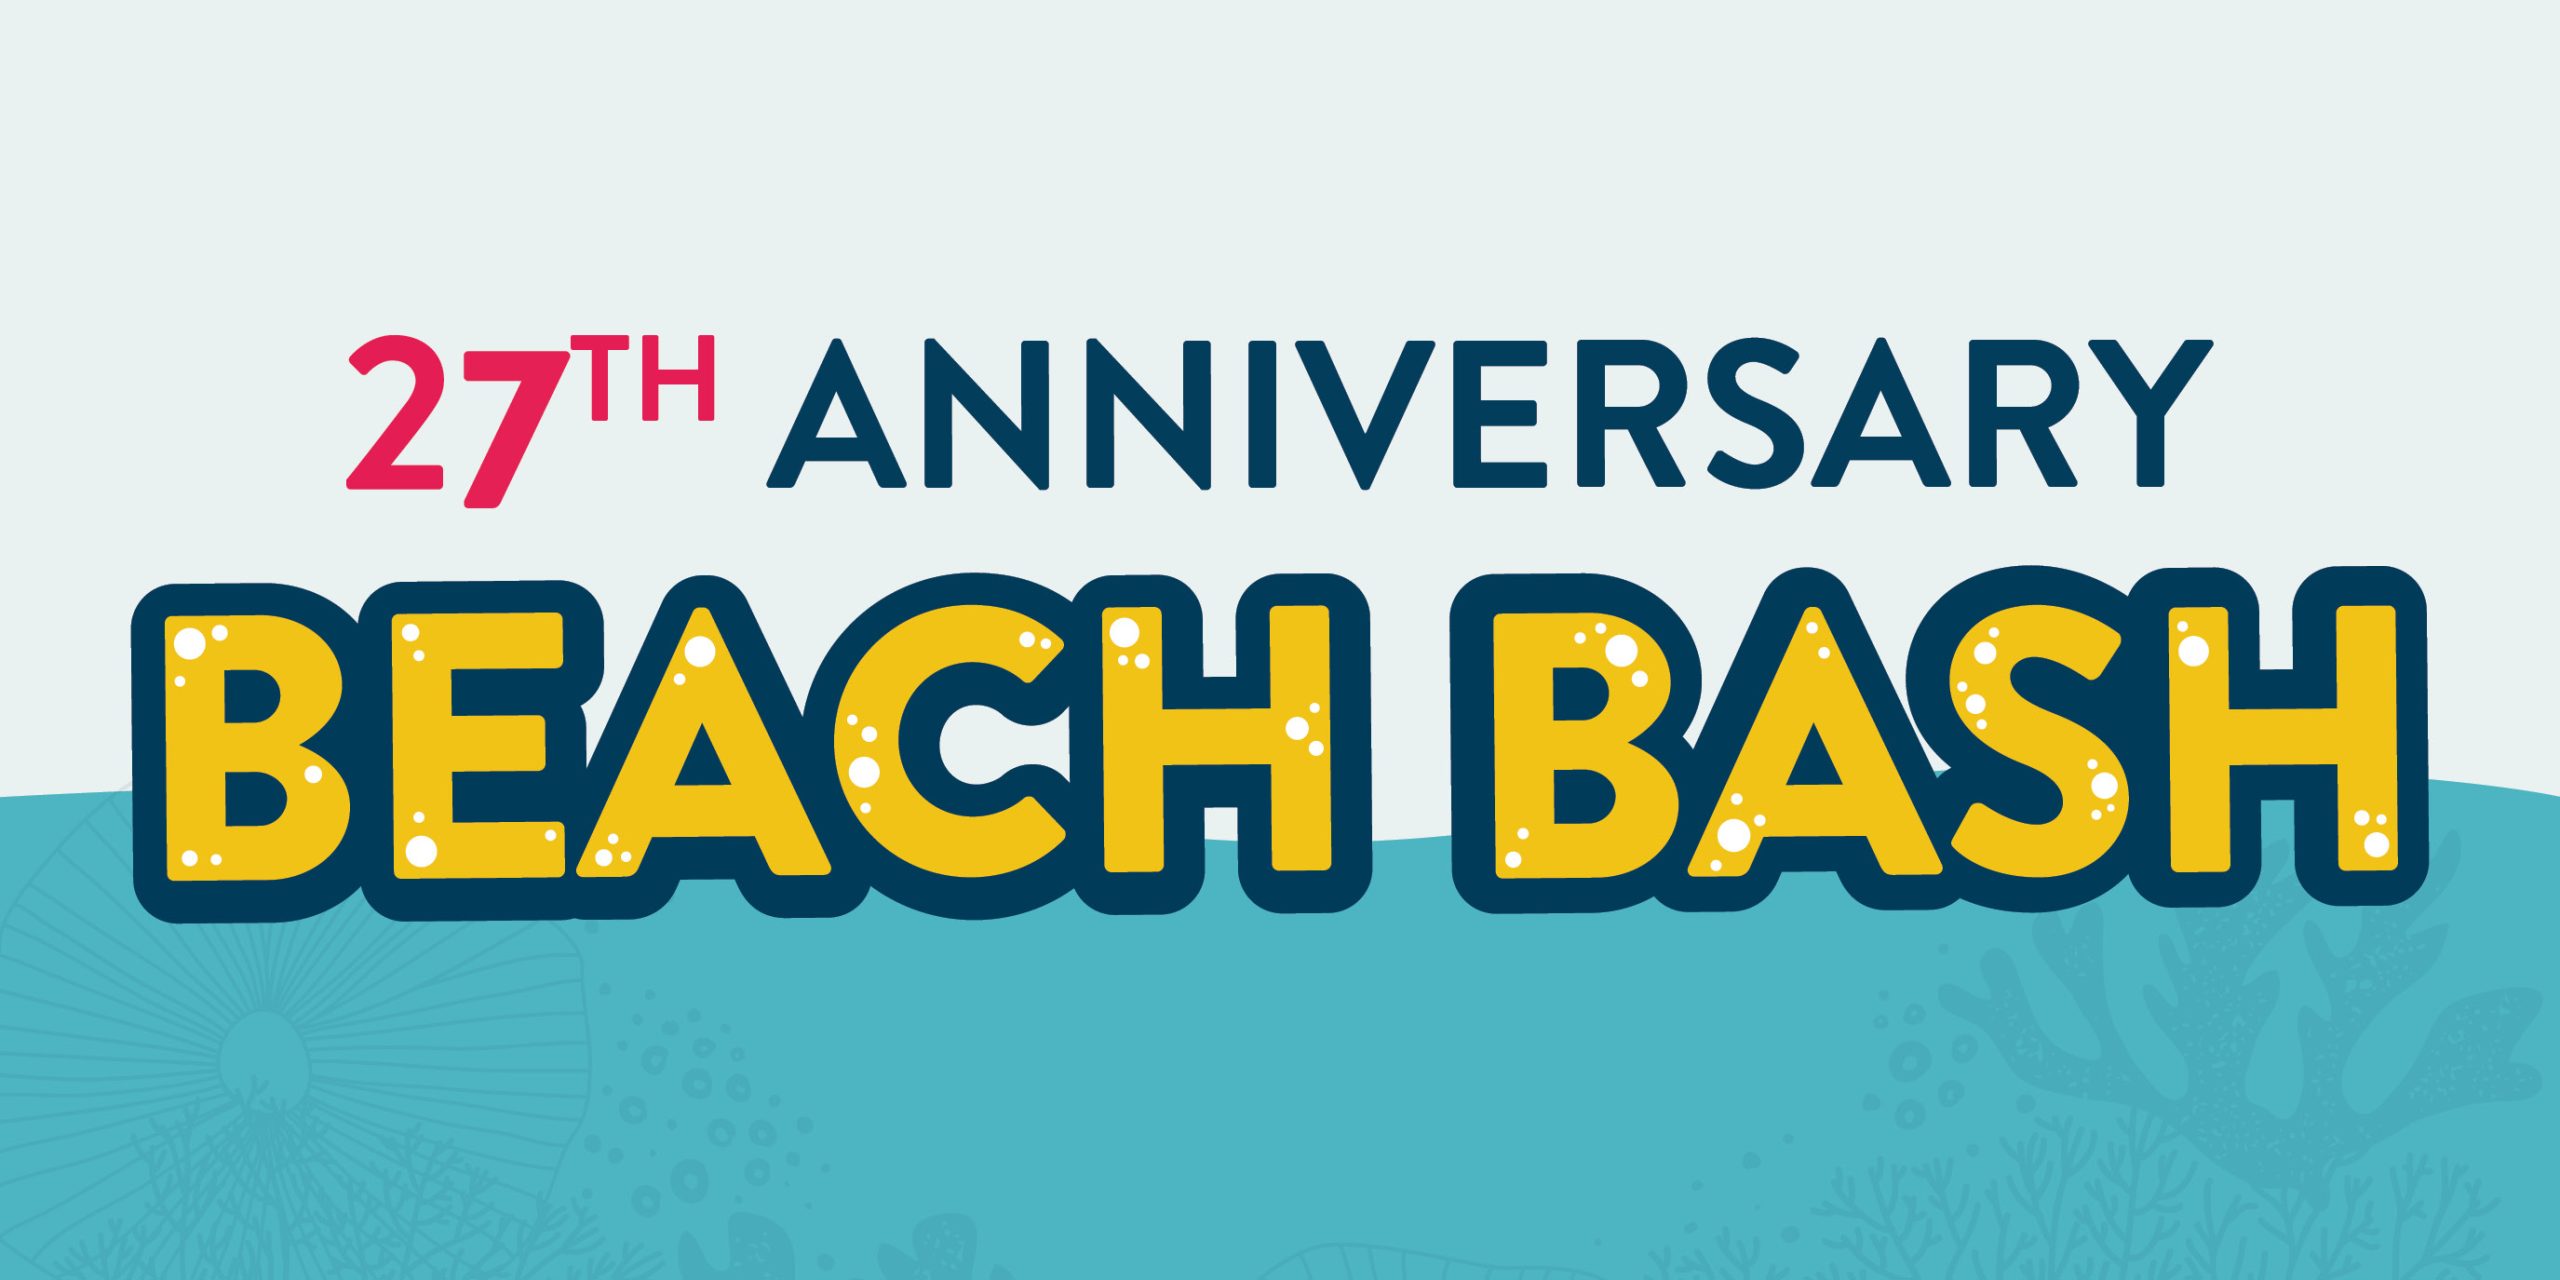 27th anniversary beach bash